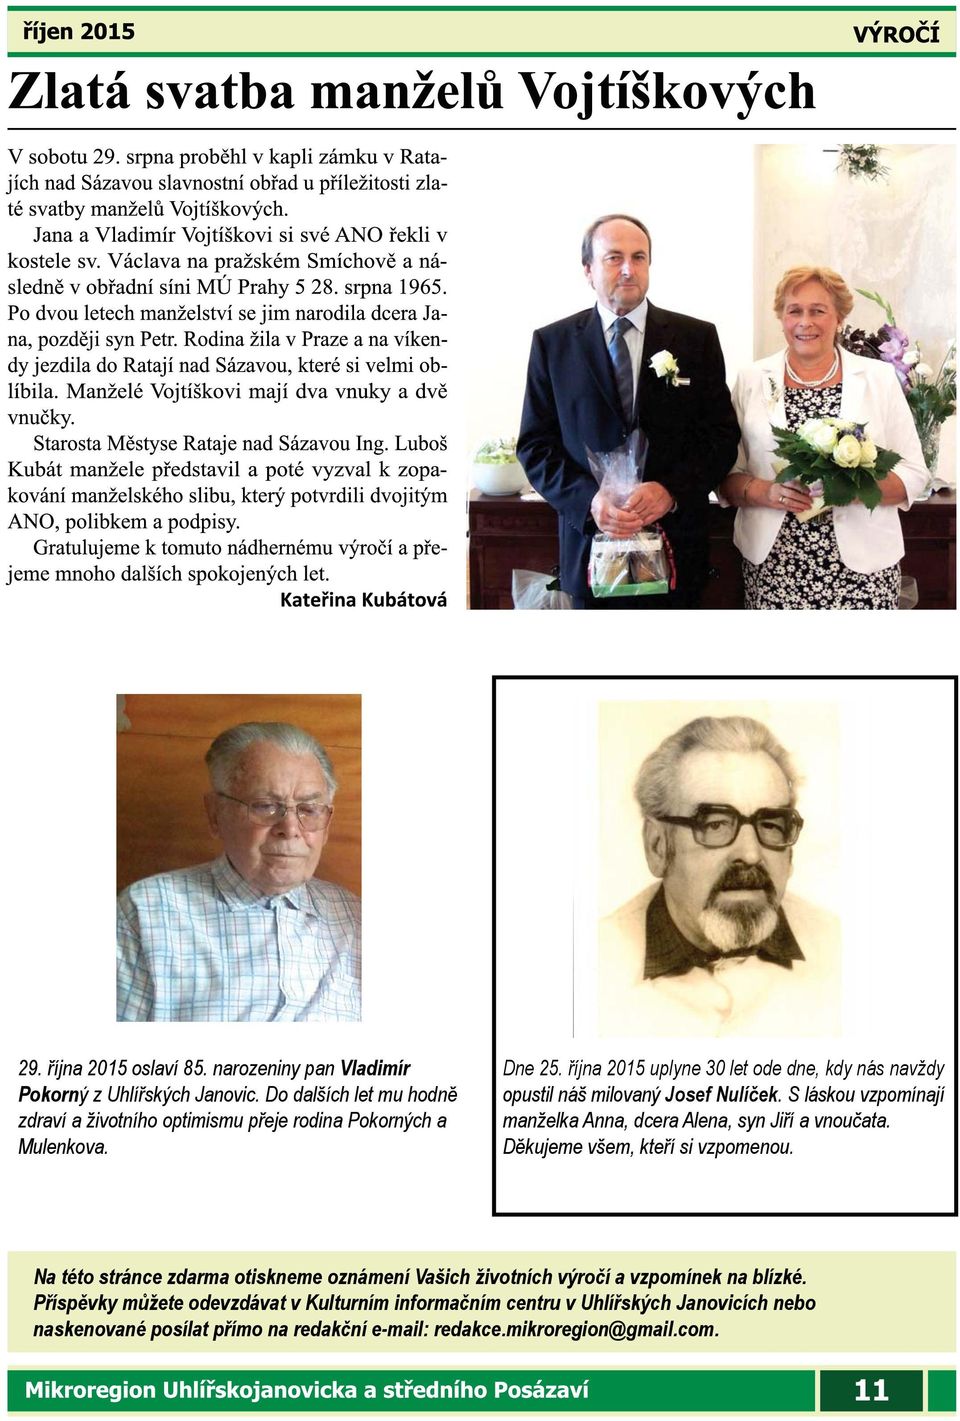 října 2015 uplyne 30 let ode dne, kdy nás navždy opustil náš milovaný Josef Nulíček. S láskou vzpomínají manželka Anna, dcera Alena, syn Jiří a vnoučata.